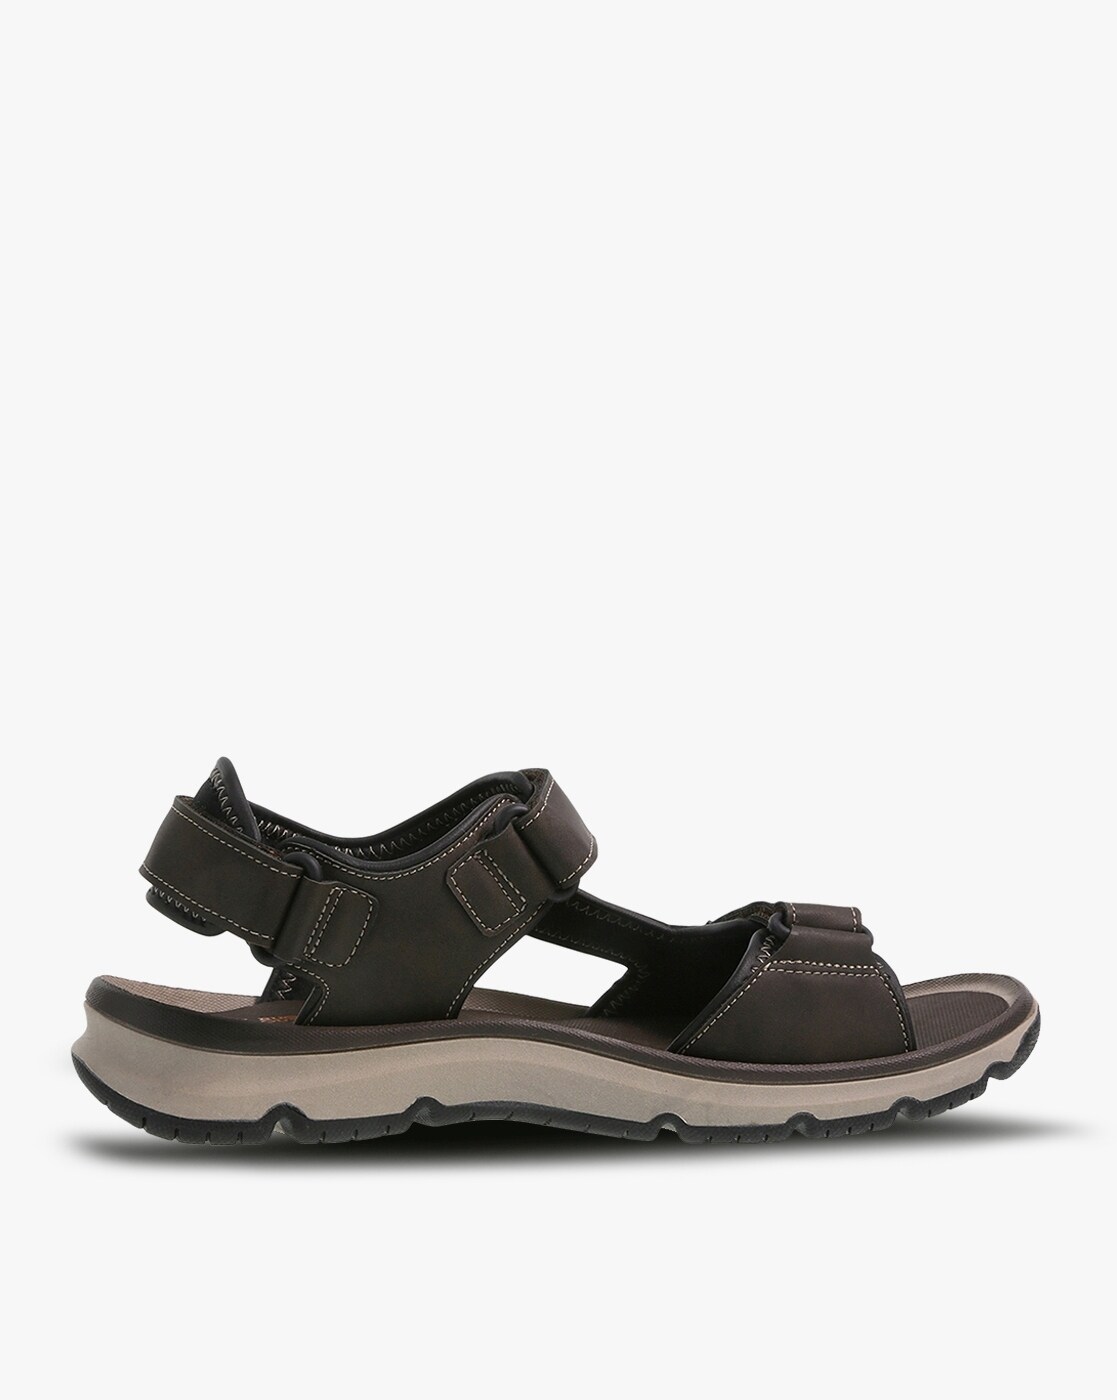 Clarks Sandals in Uganda for sale ▷ Prices on Jiji.ug